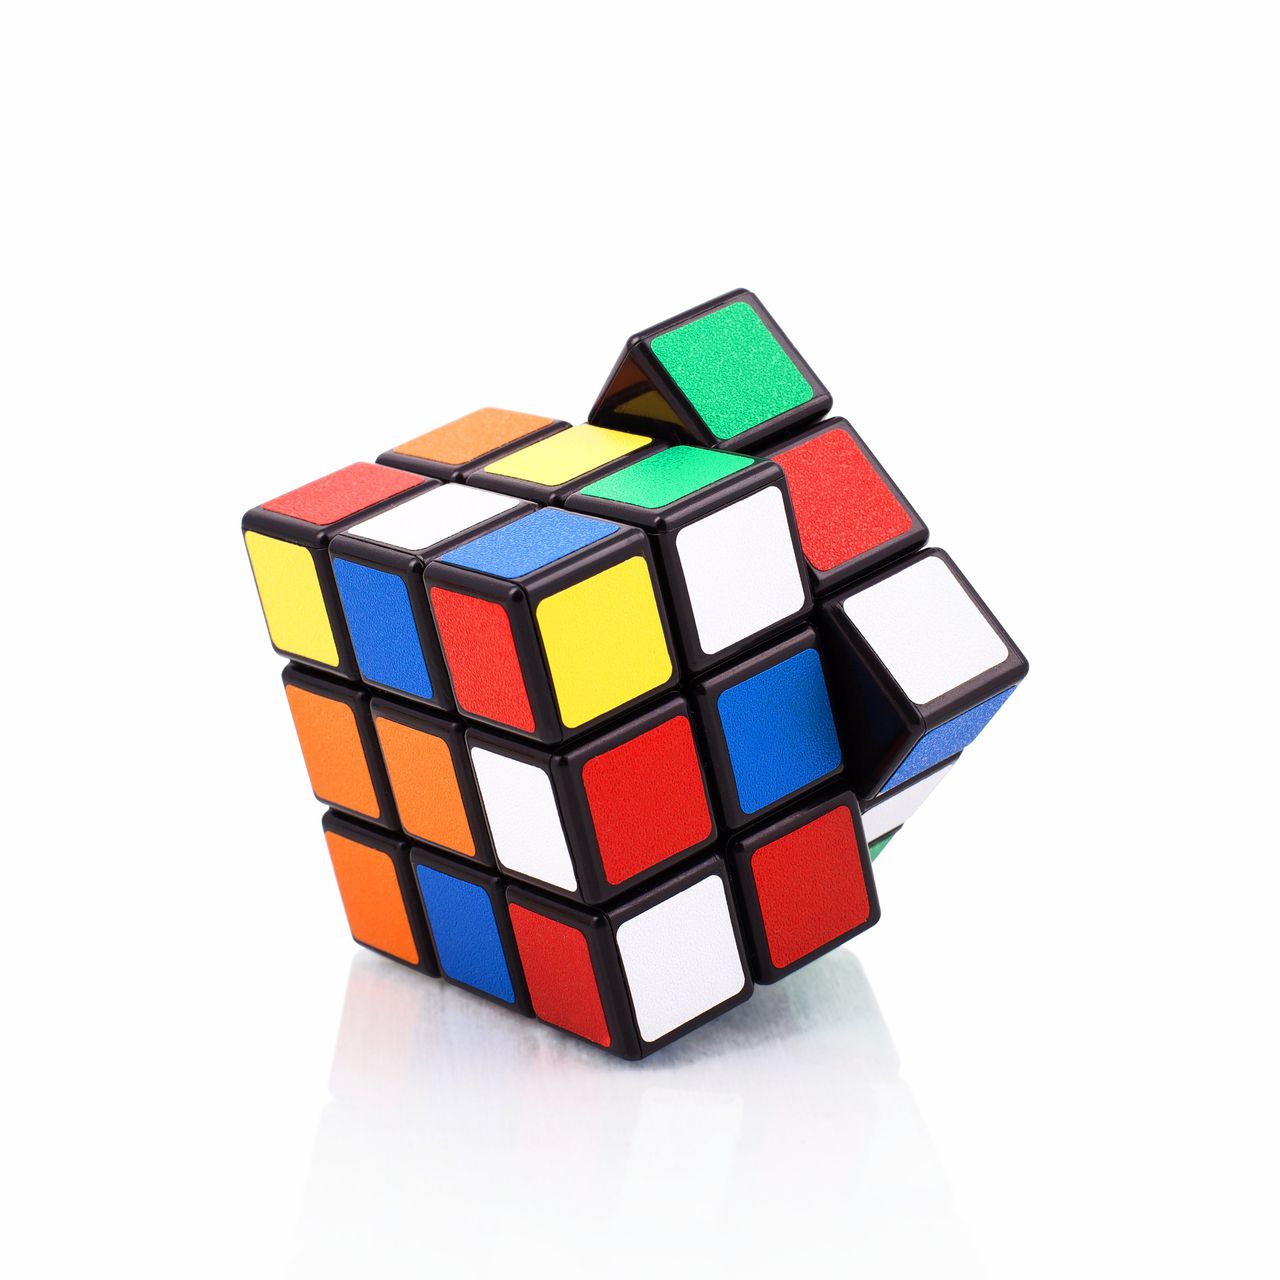 Kleur Rubiks Kubus beschermd, maar de vorm niet 